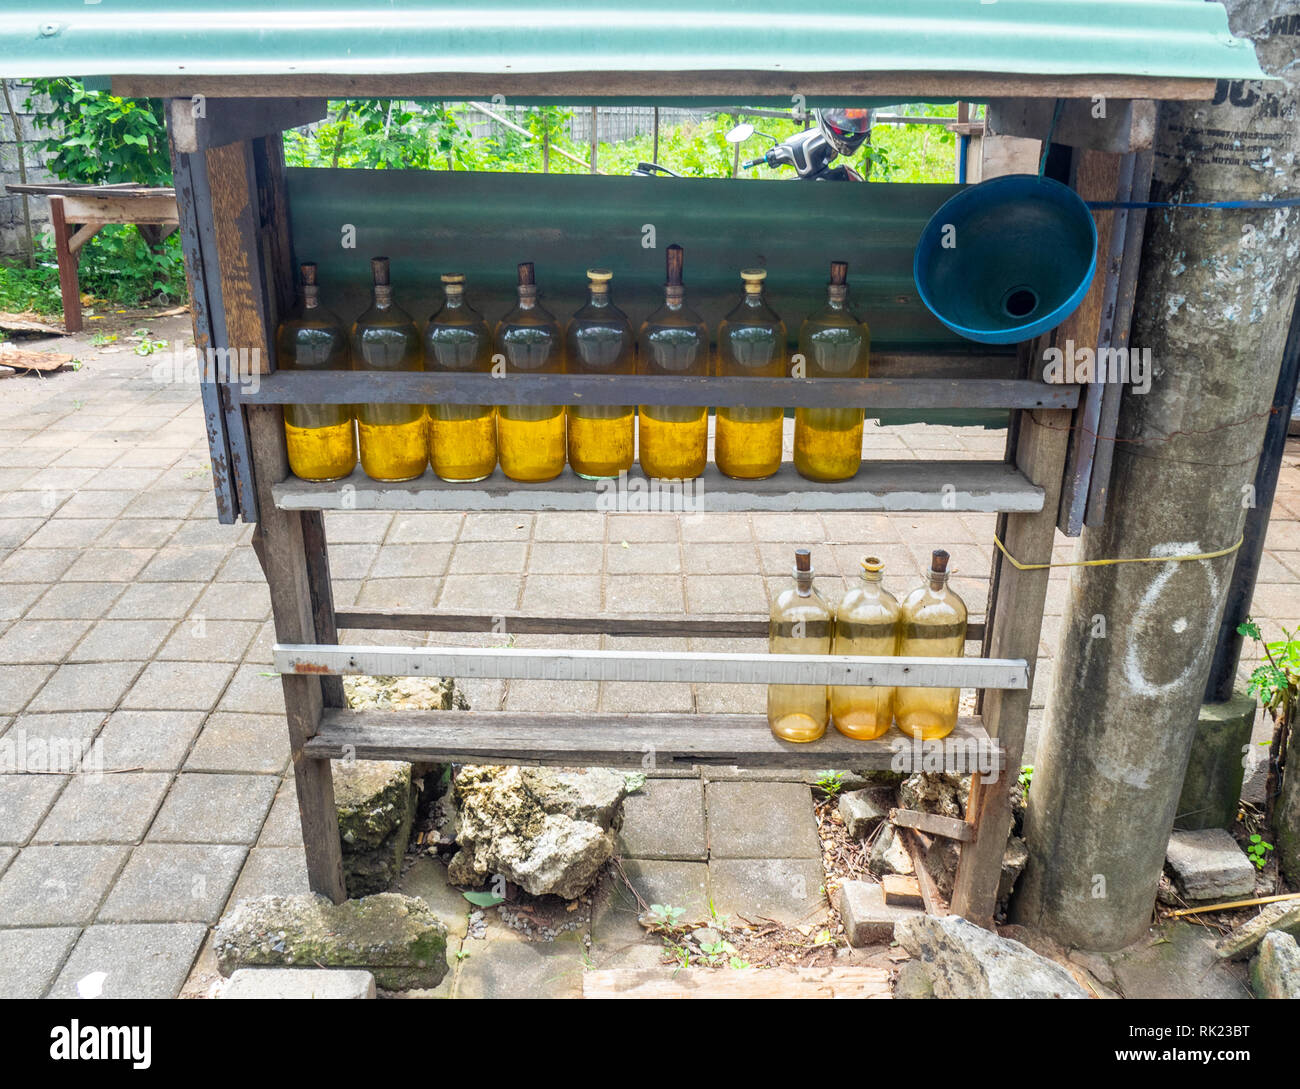 Bouteilles d'essence ou de l'essence sur des étagères en bois à un vendeur routière à Jimbaran, Bali Indonésie. Banque D'Images